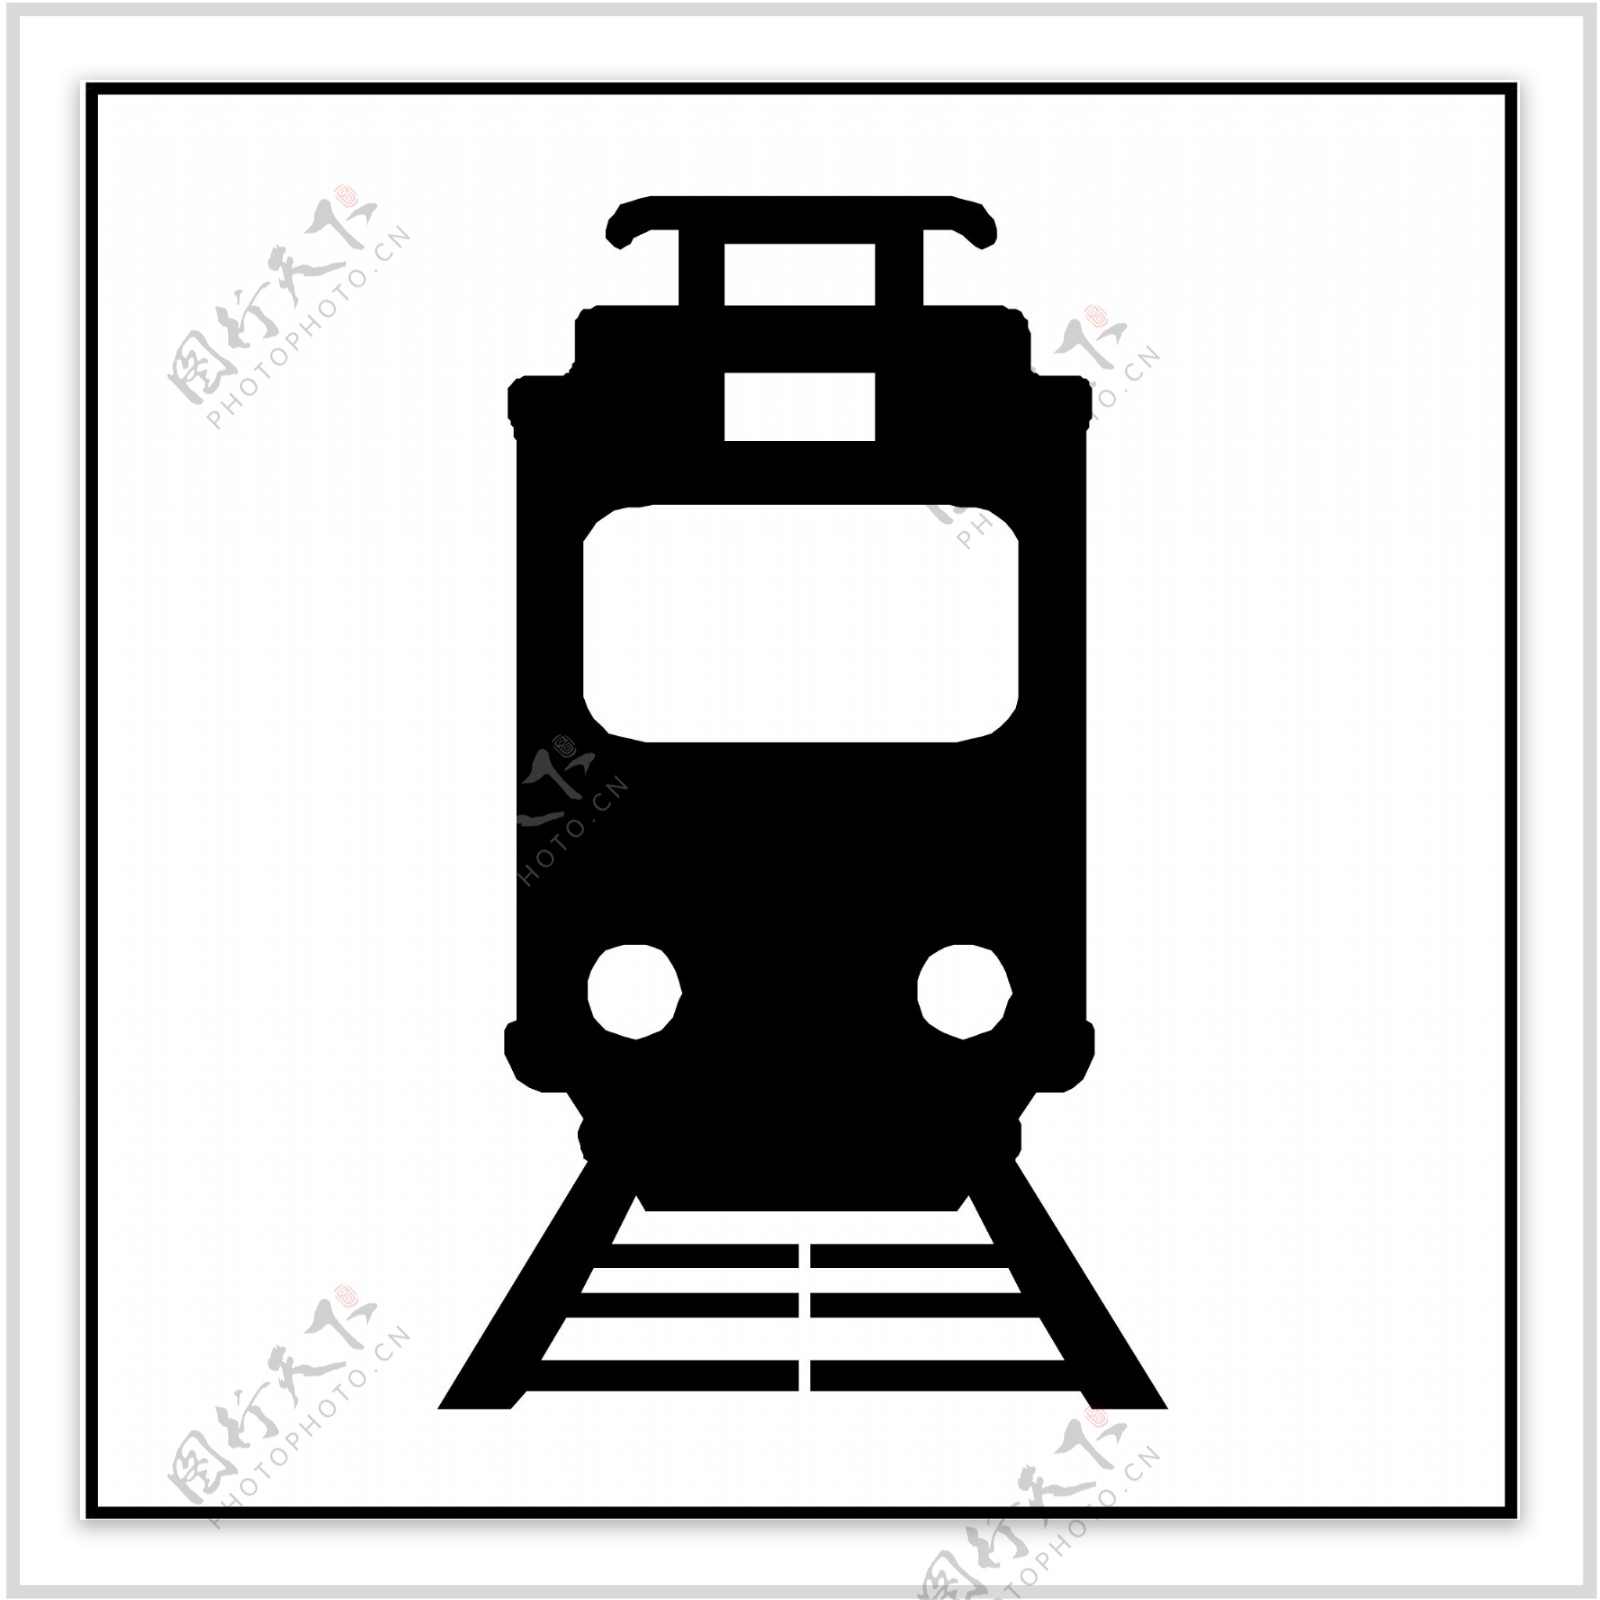 铁路车站标志图片